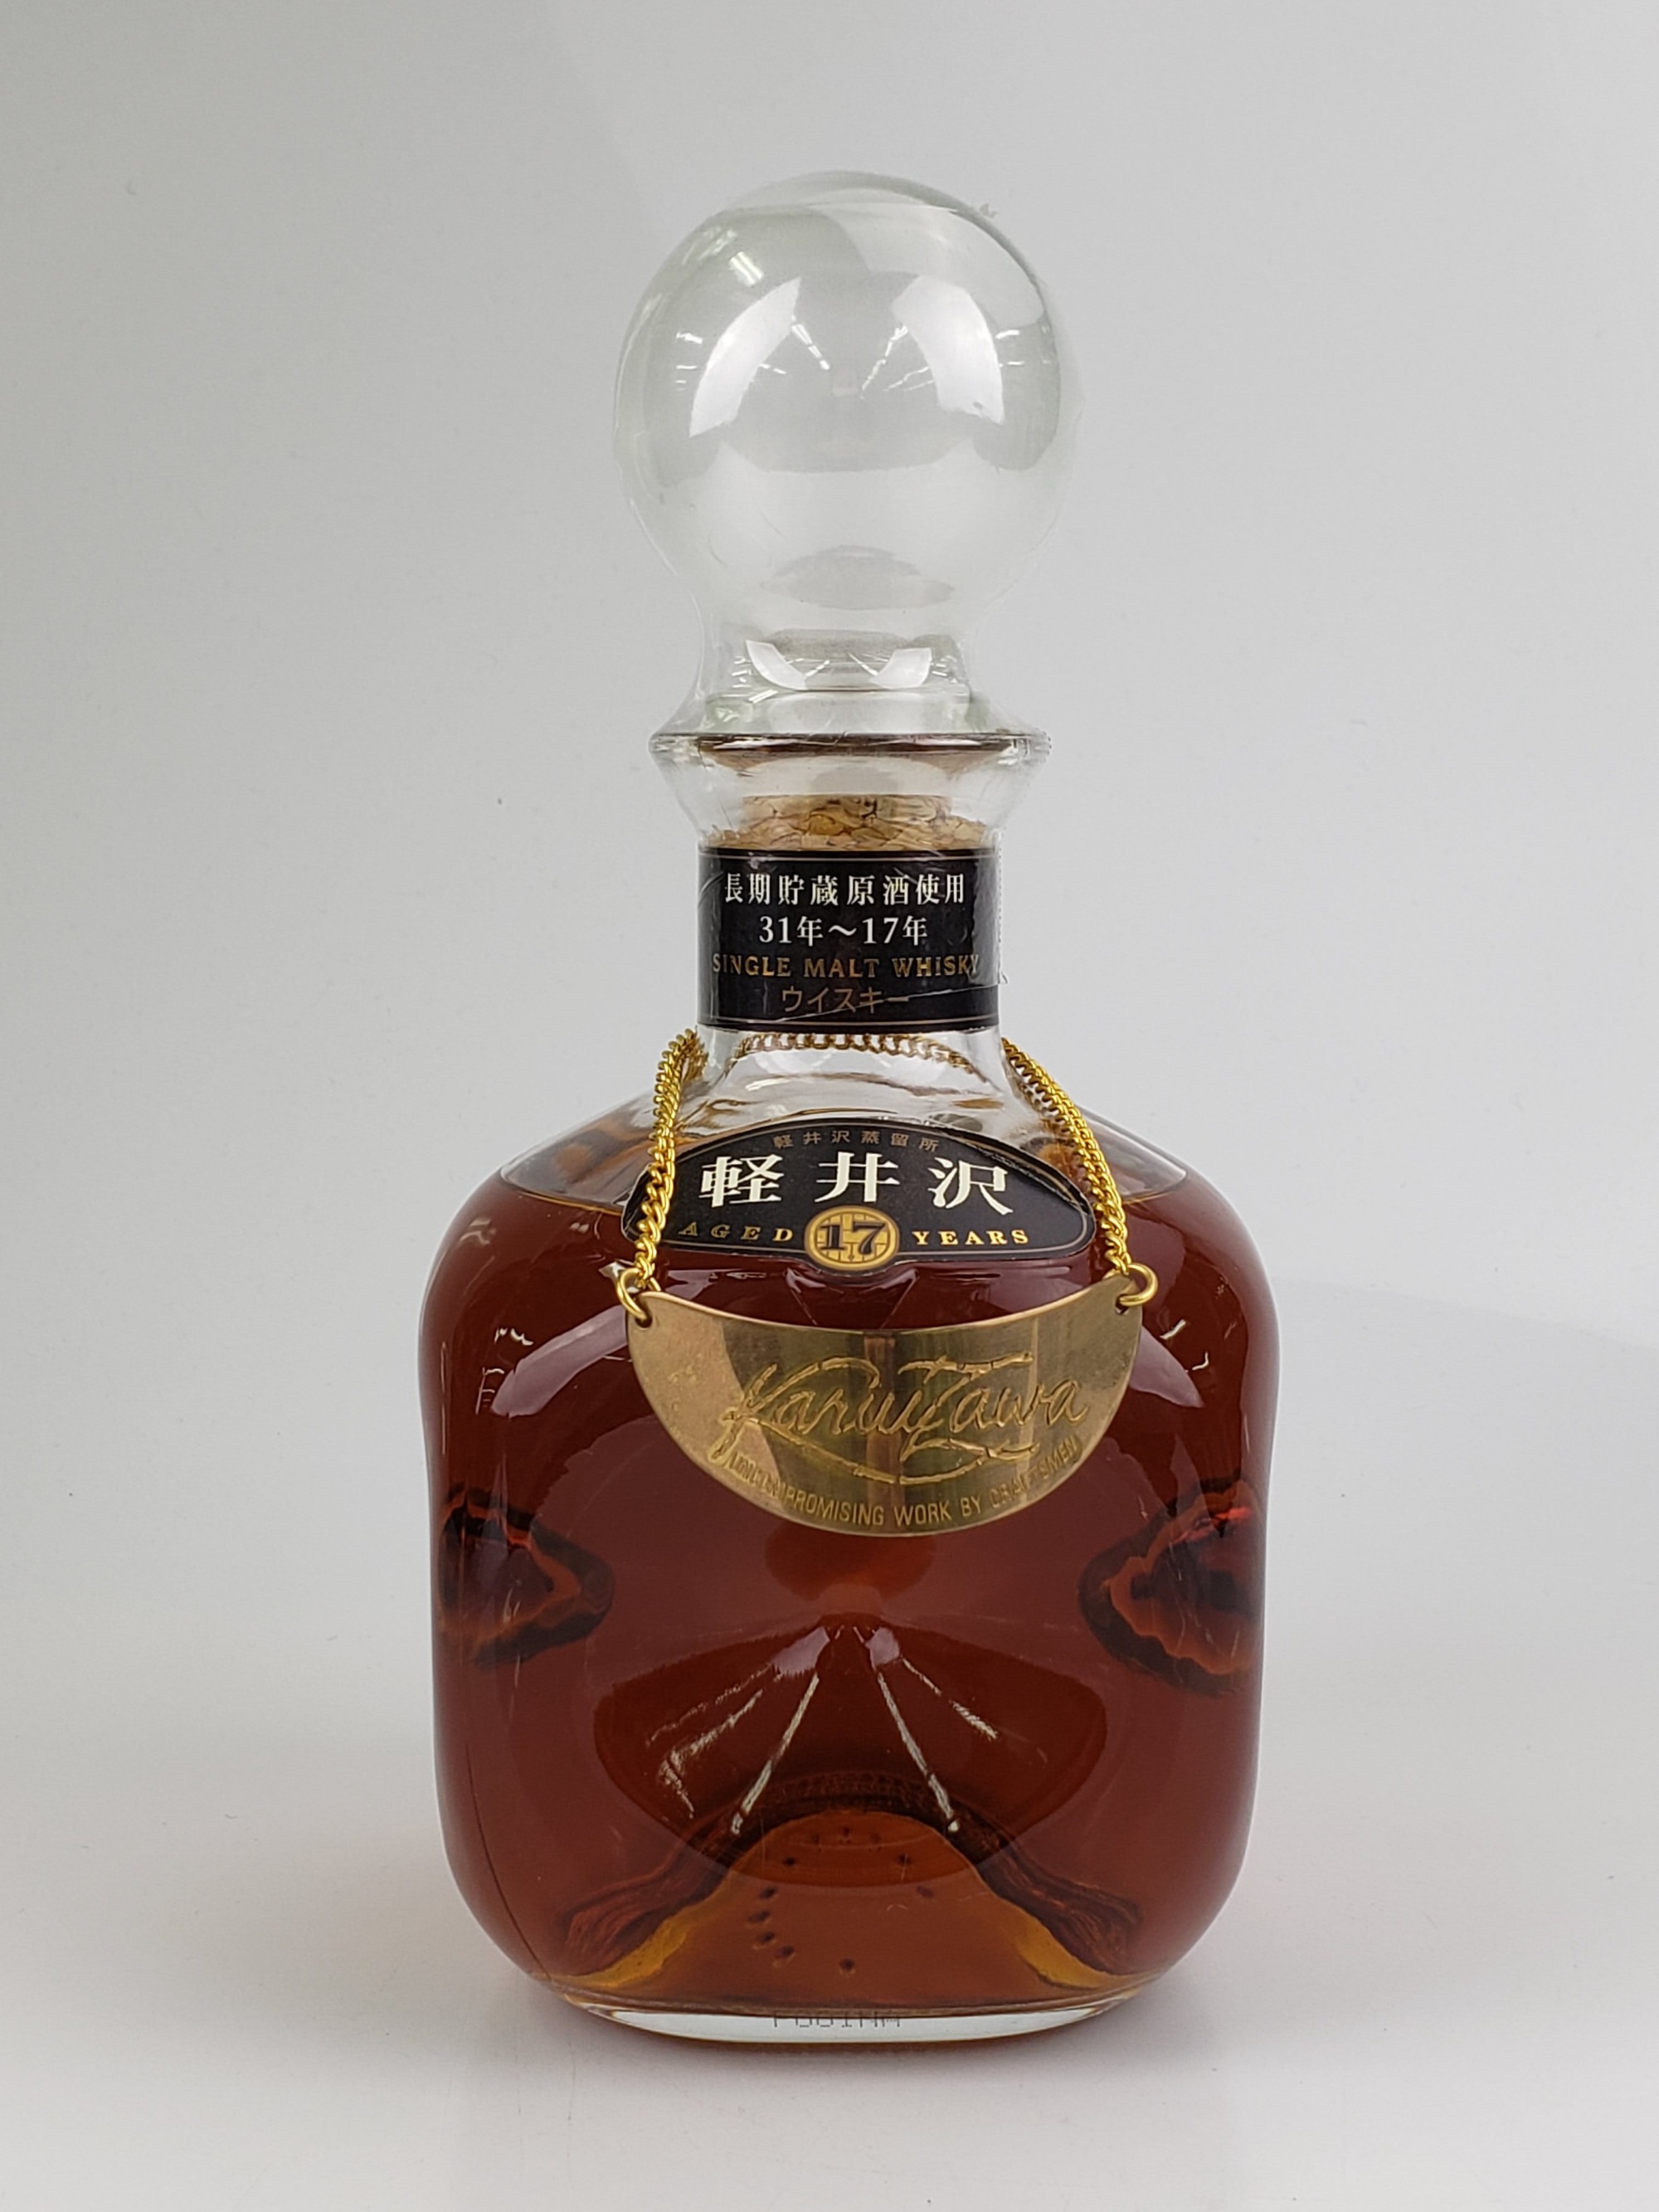 シングルモルトウイスキー軽井沢17年 長期貯蔵原酒使用 31年〜17年 ...